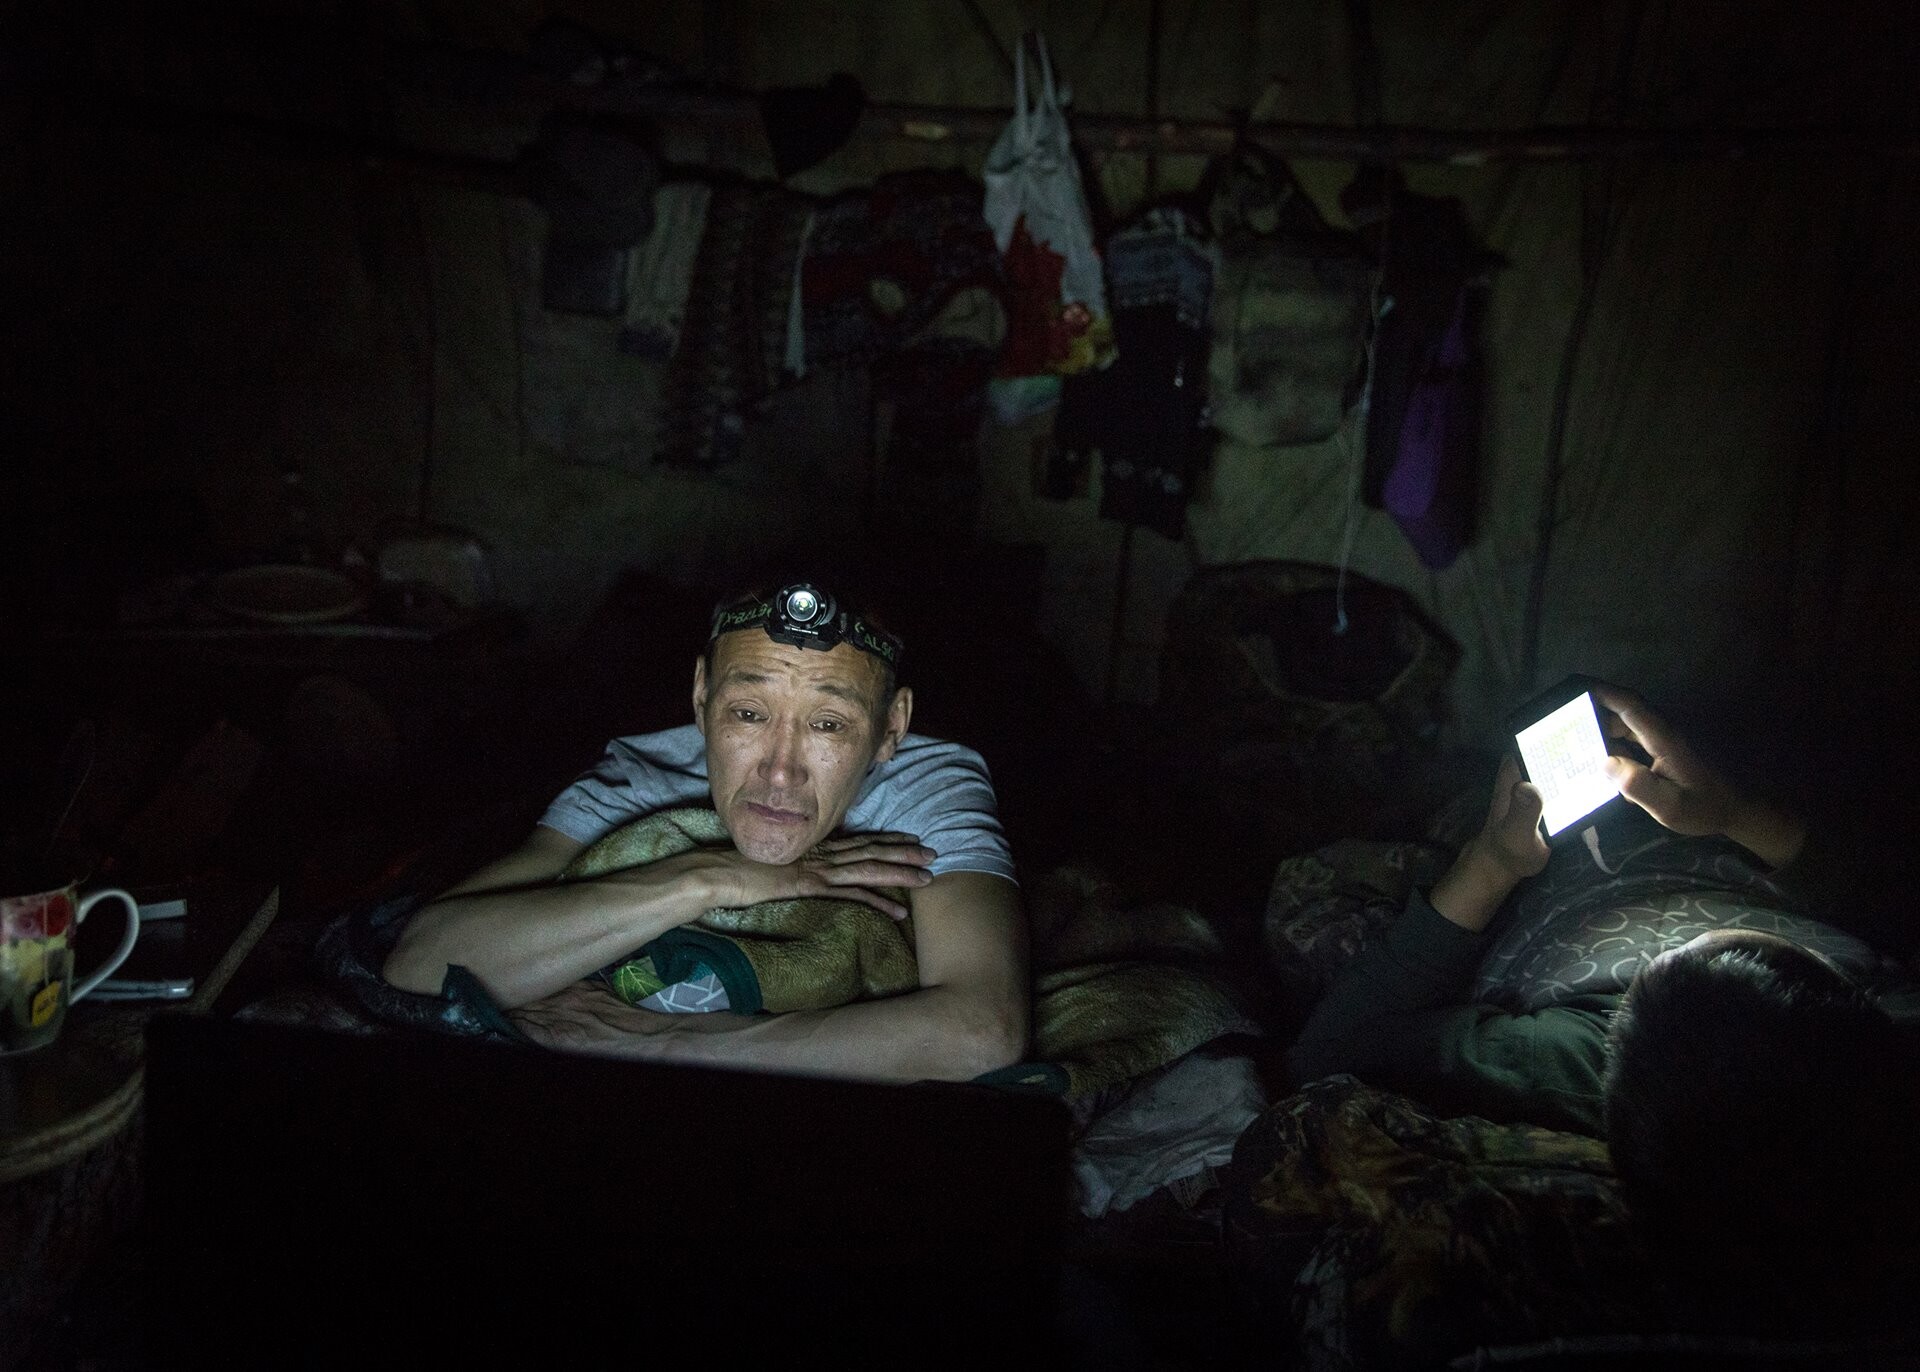 Охотник Григорий Замятин смотрит фильм на своём ноутбуке в палатке перед сном, Саха. Фотограф Алексей Васильев